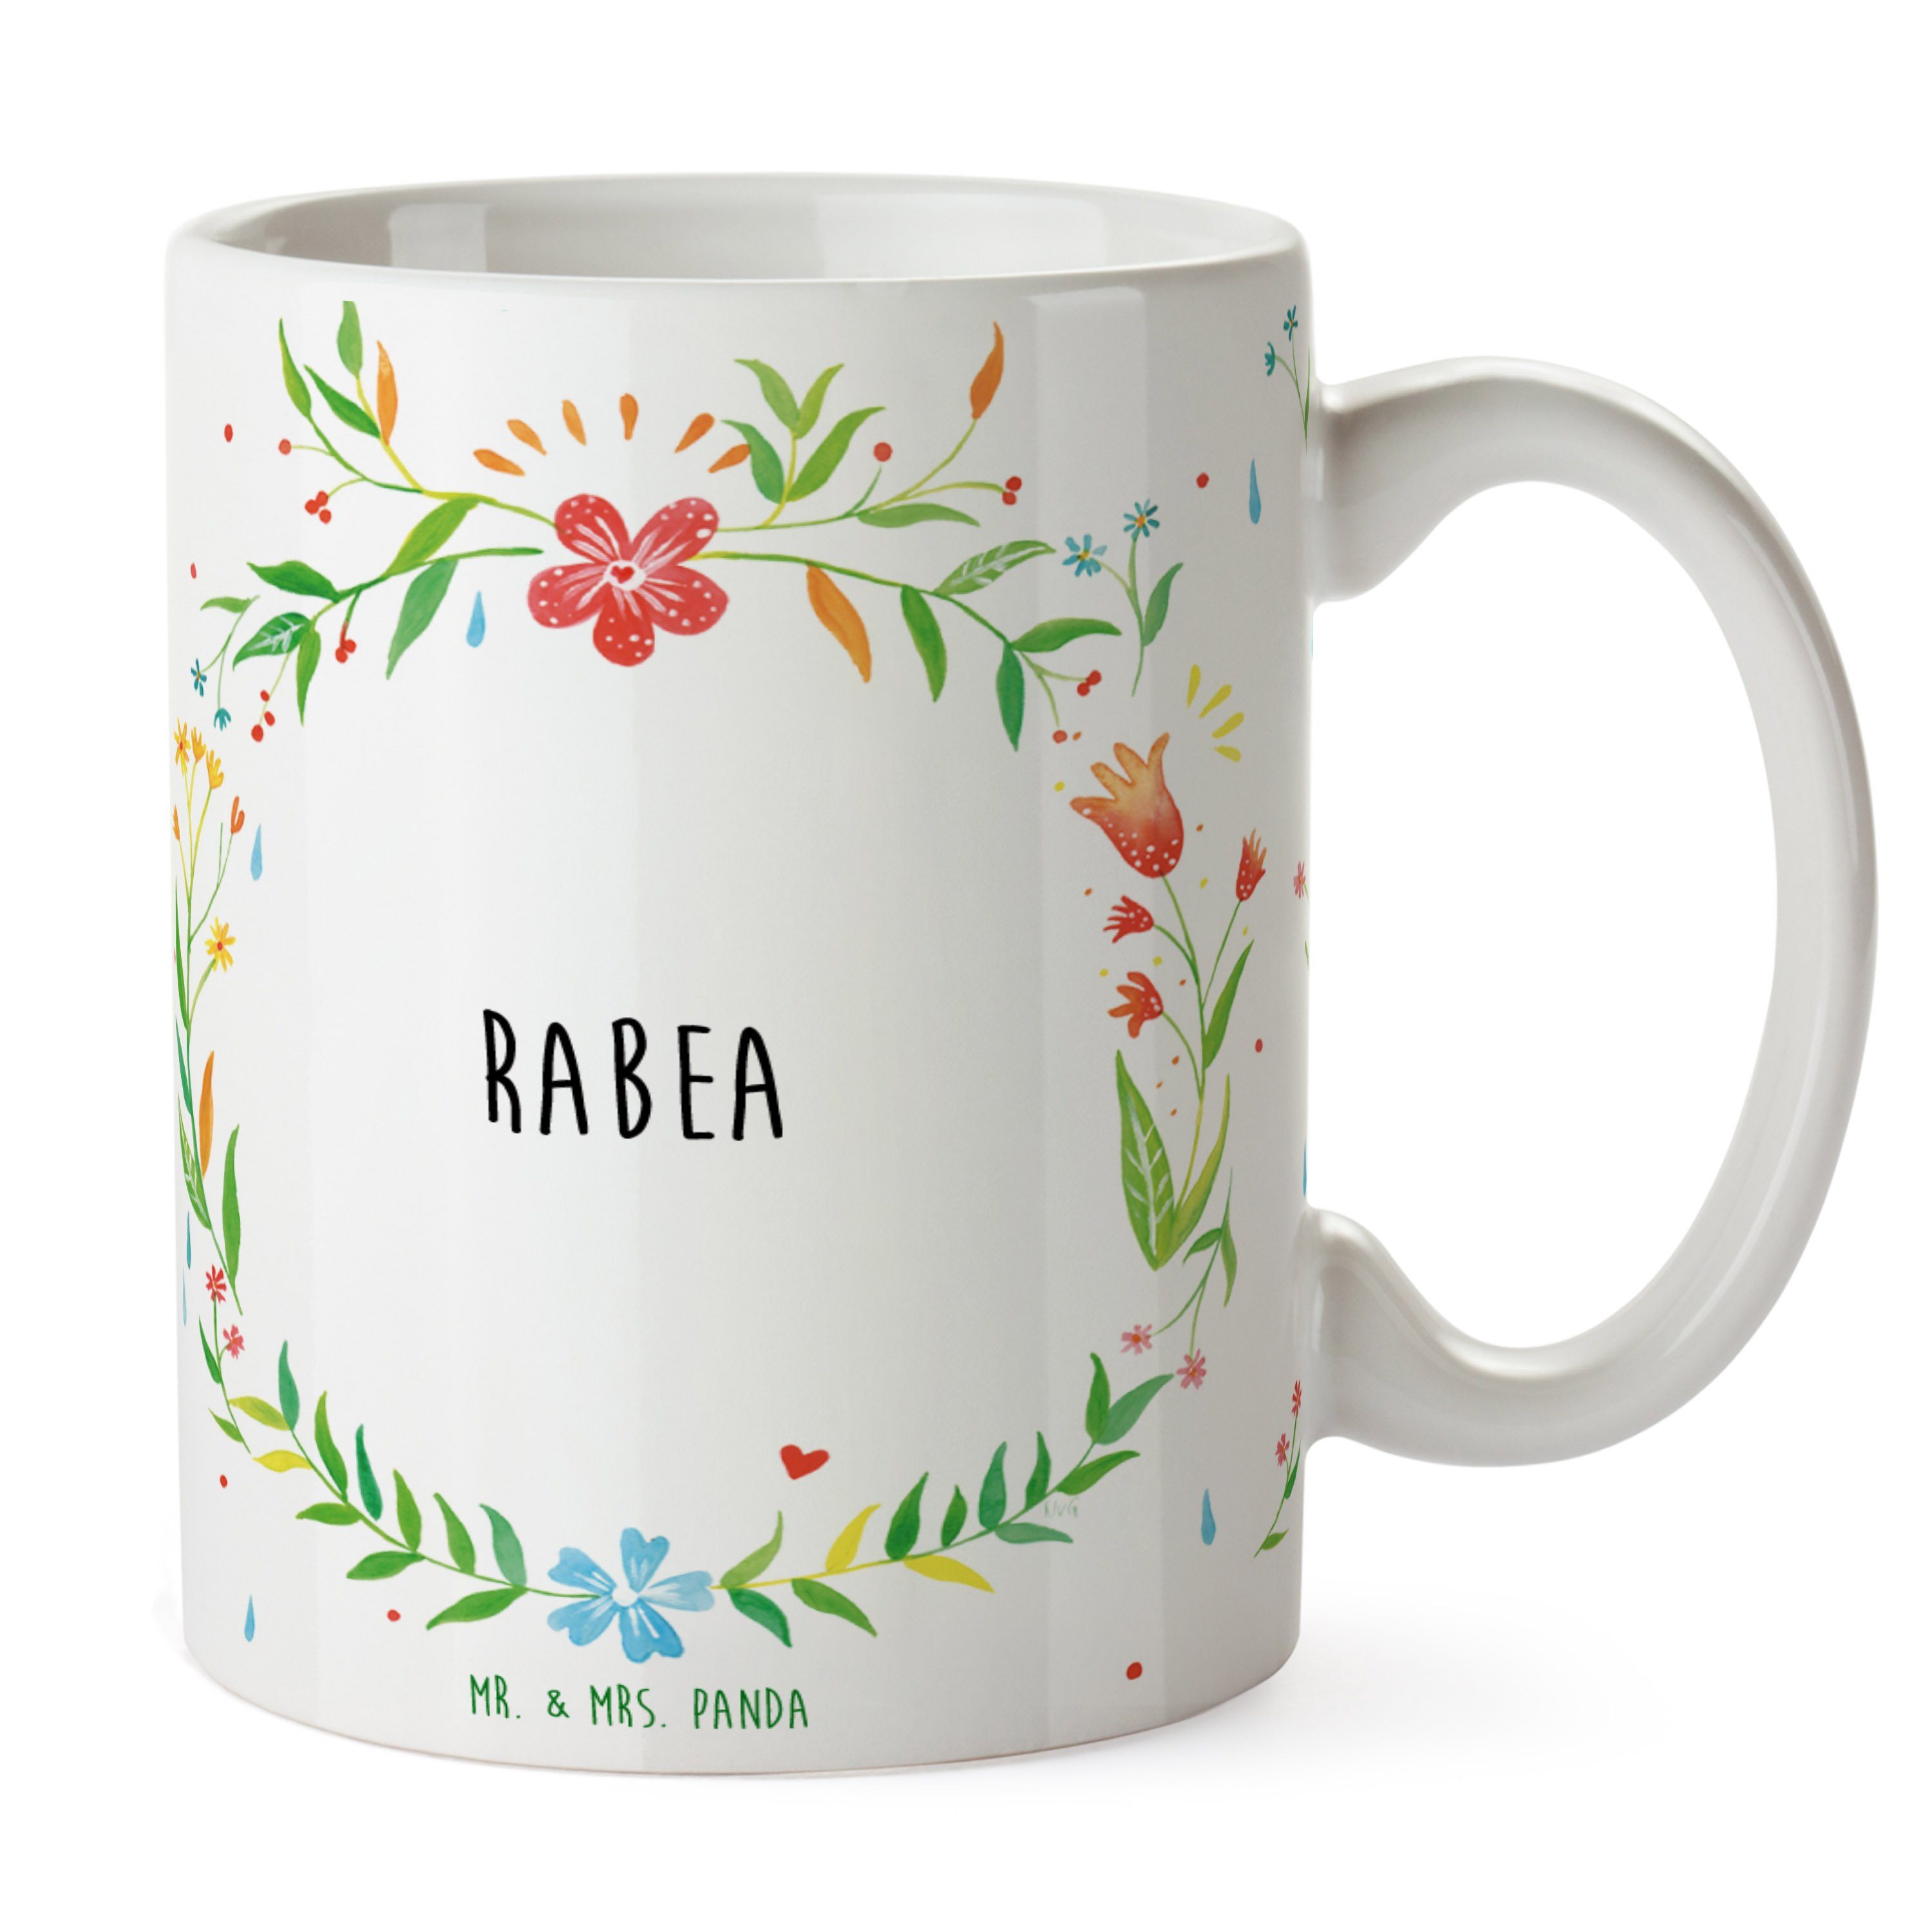 Mr. & Mrs. Panda Keramik Porzellantasse, Geschenk, Tasse, - Geschenk Tasse Kaffeebecher, Tasse, Rabea